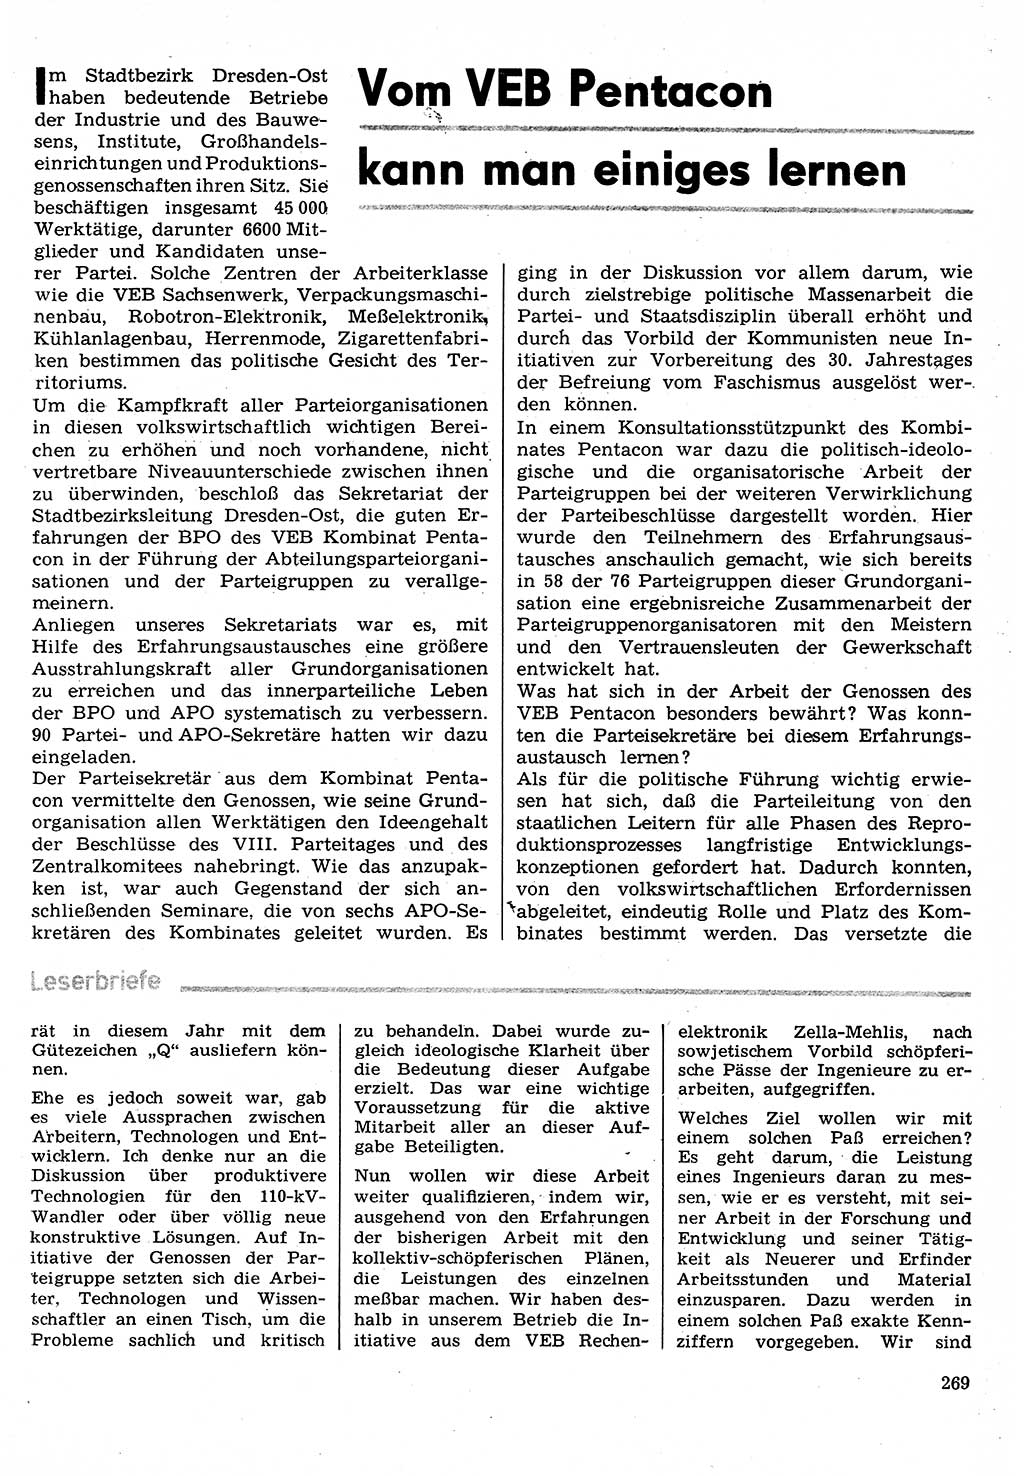 Neuer Weg (NW), Organ des Zentralkomitees (ZK) der SED (Sozialistische Einheitspartei Deutschlands) für Fragen des Parteilebens, 30. Jahrgang [Deutsche Demokratische Republik (DDR)] 1975, Seite 269 (NW ZK SED DDR 1975, S. 269)